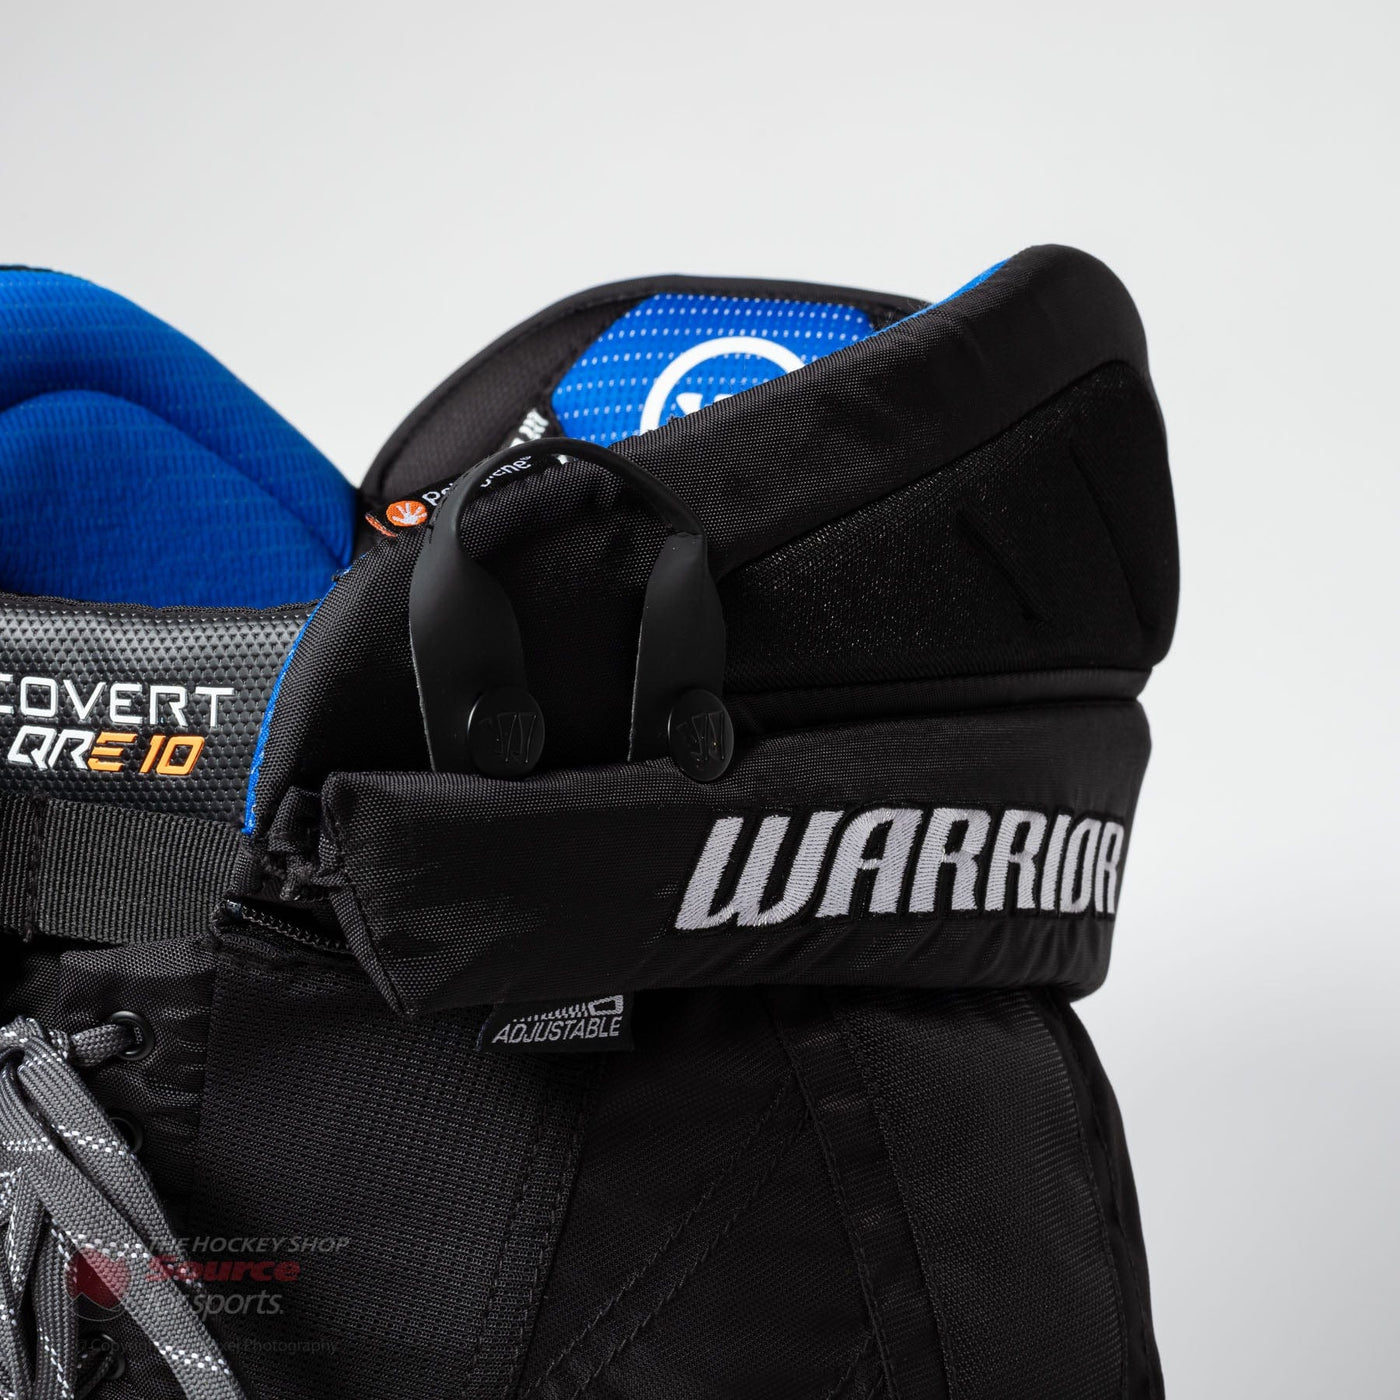 Warrior Covert QRE 10 Senior Hockey Pants